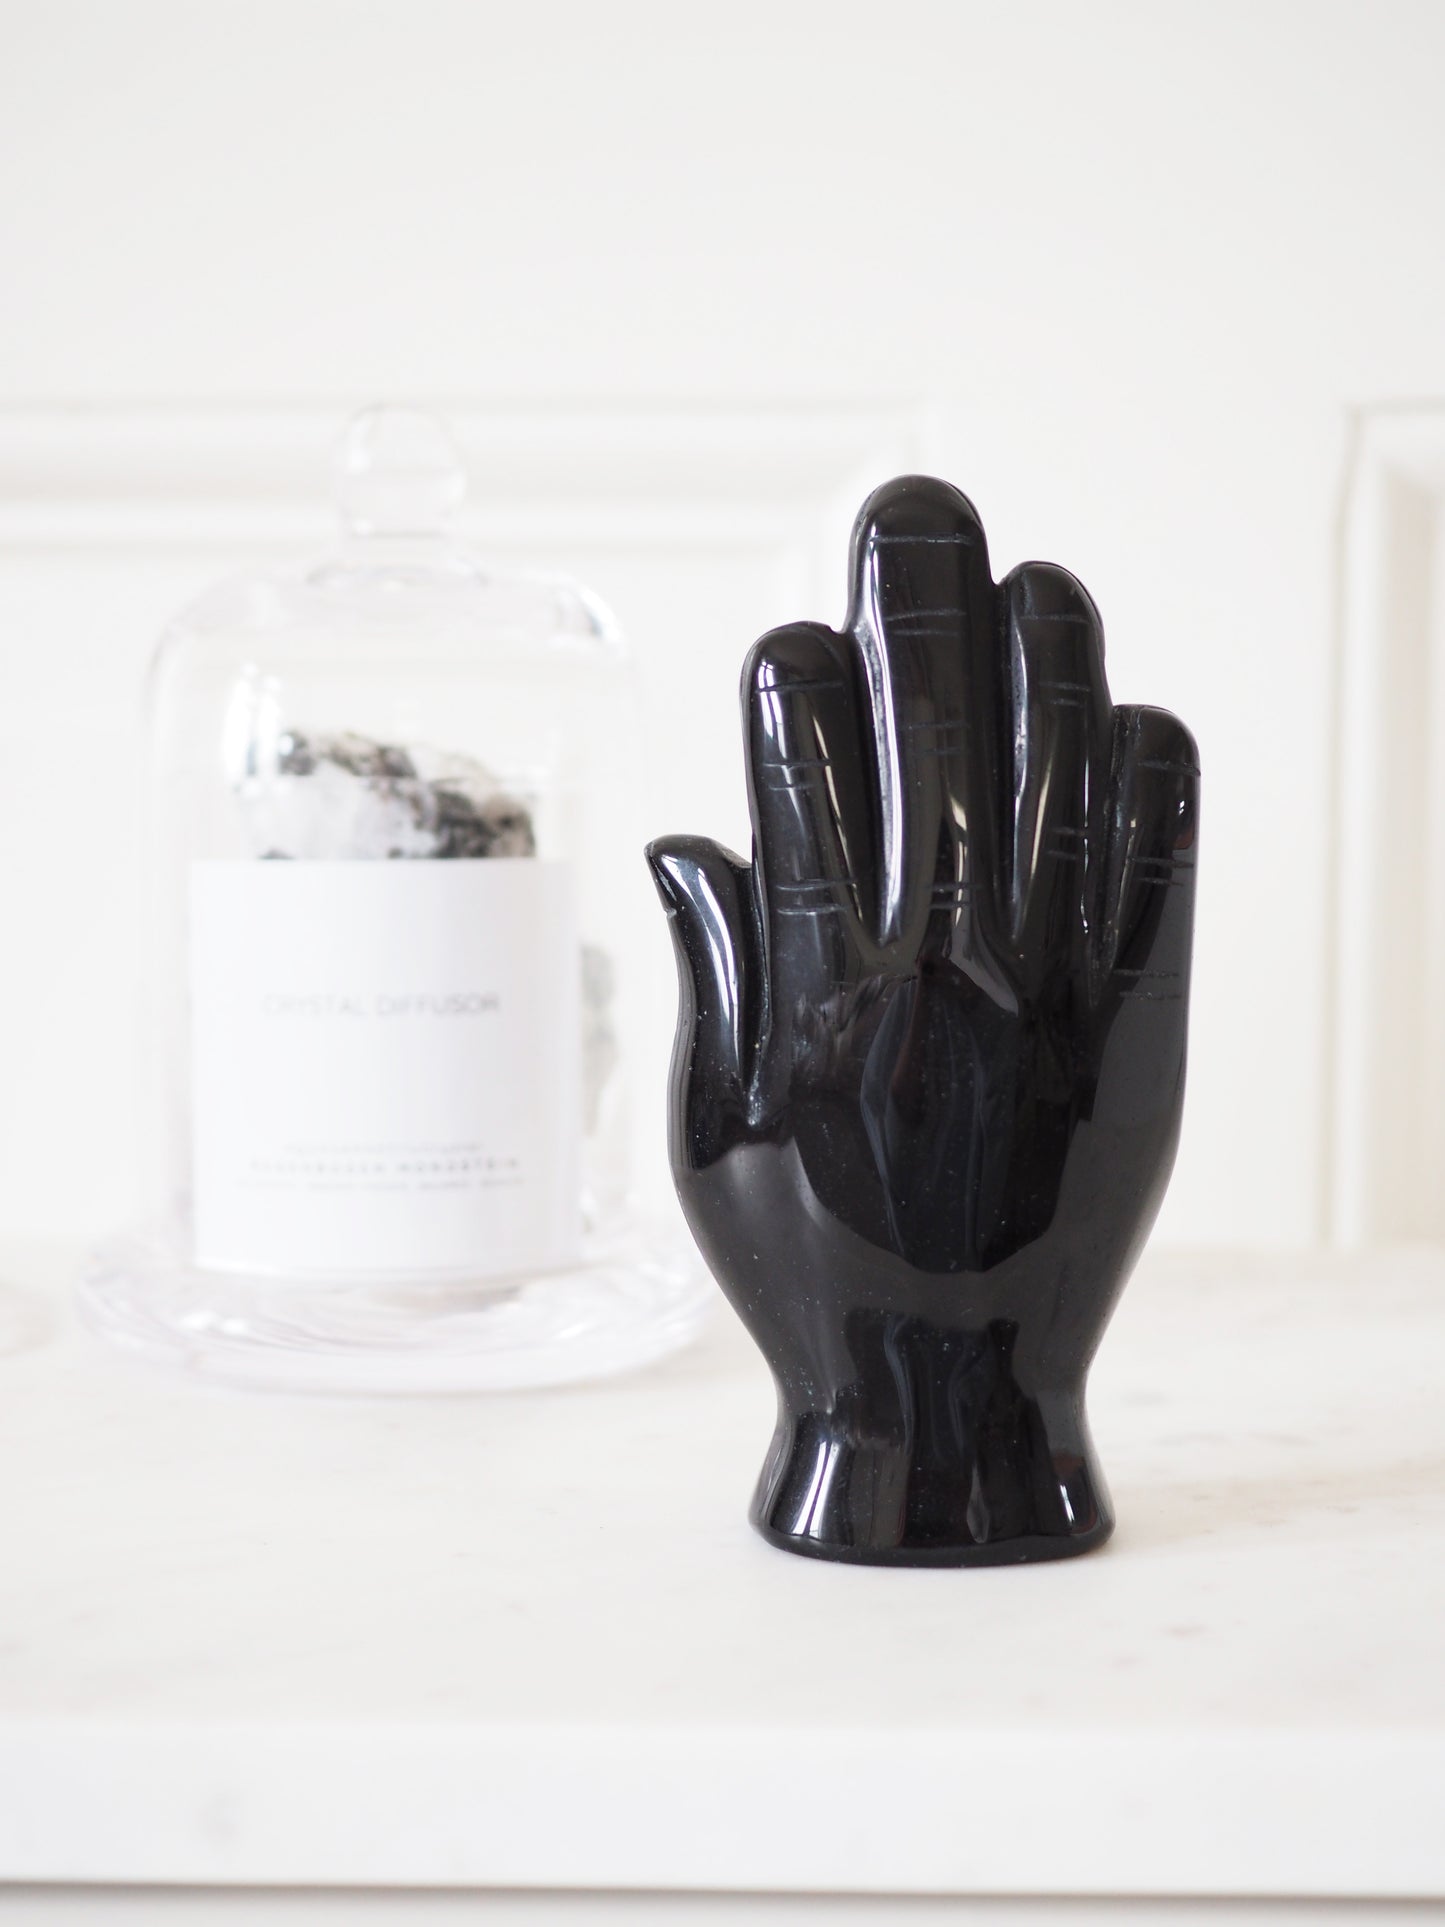 Schwarzer Obsidian Magische Hand mit Auge Hamsa . Black Obsidian Magic Hand with Eye ca. 12 cm - Hand Carved